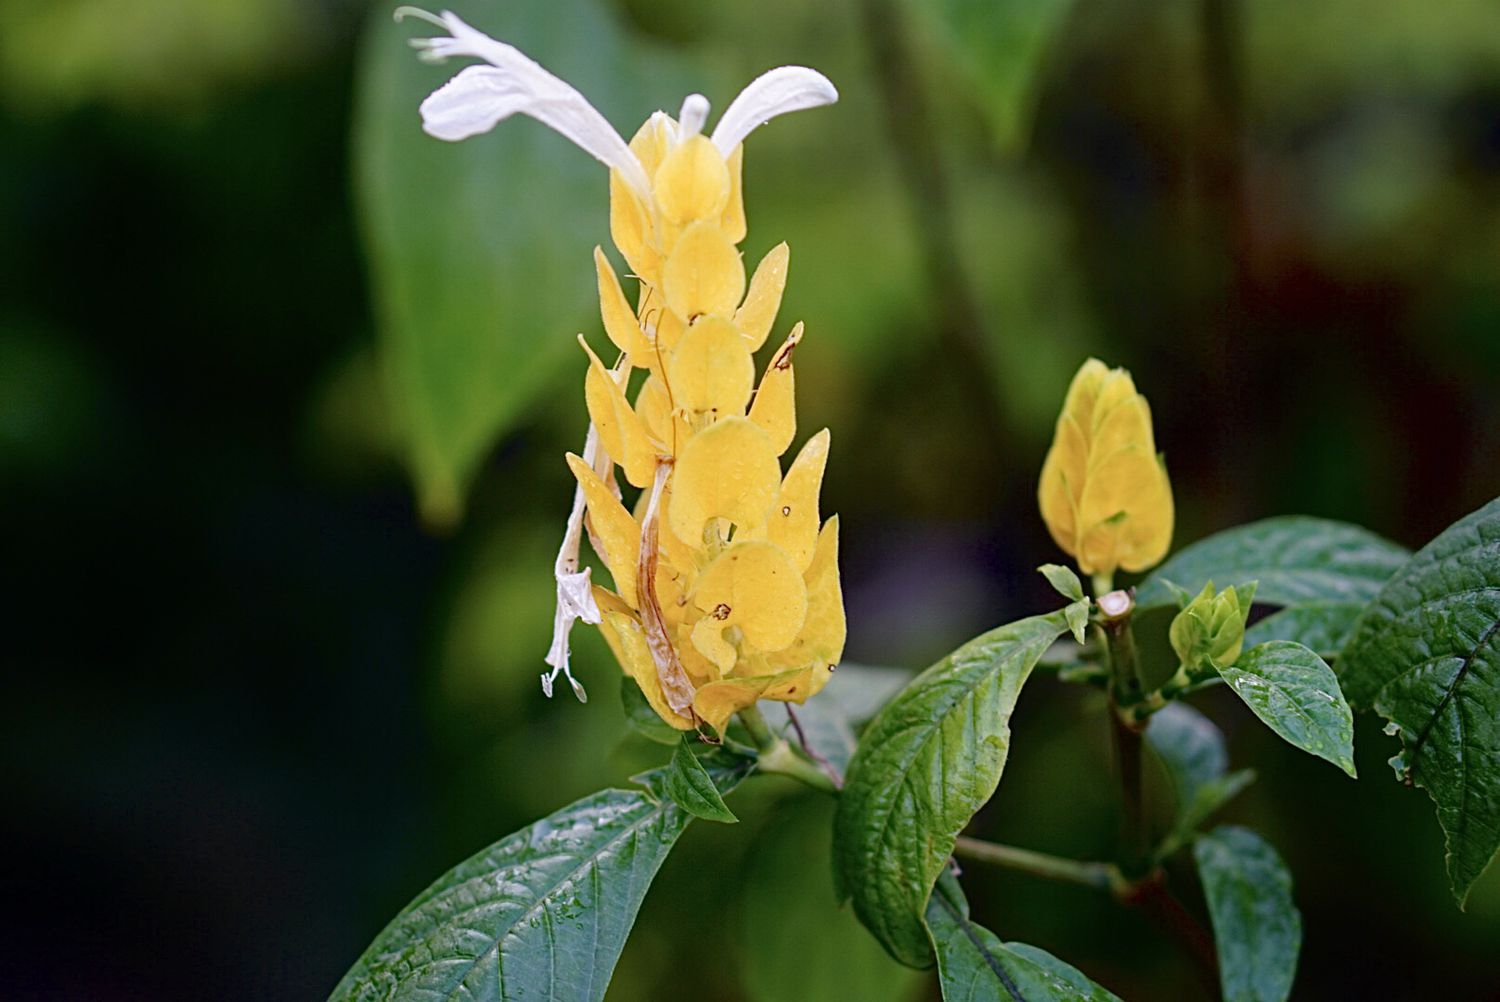 Goldene Garnelenpflanze mit gelben, geschichteten Staubgefäßen und drei kleinen weißen Blütenblättern an der Spitze in Nahaufnahme